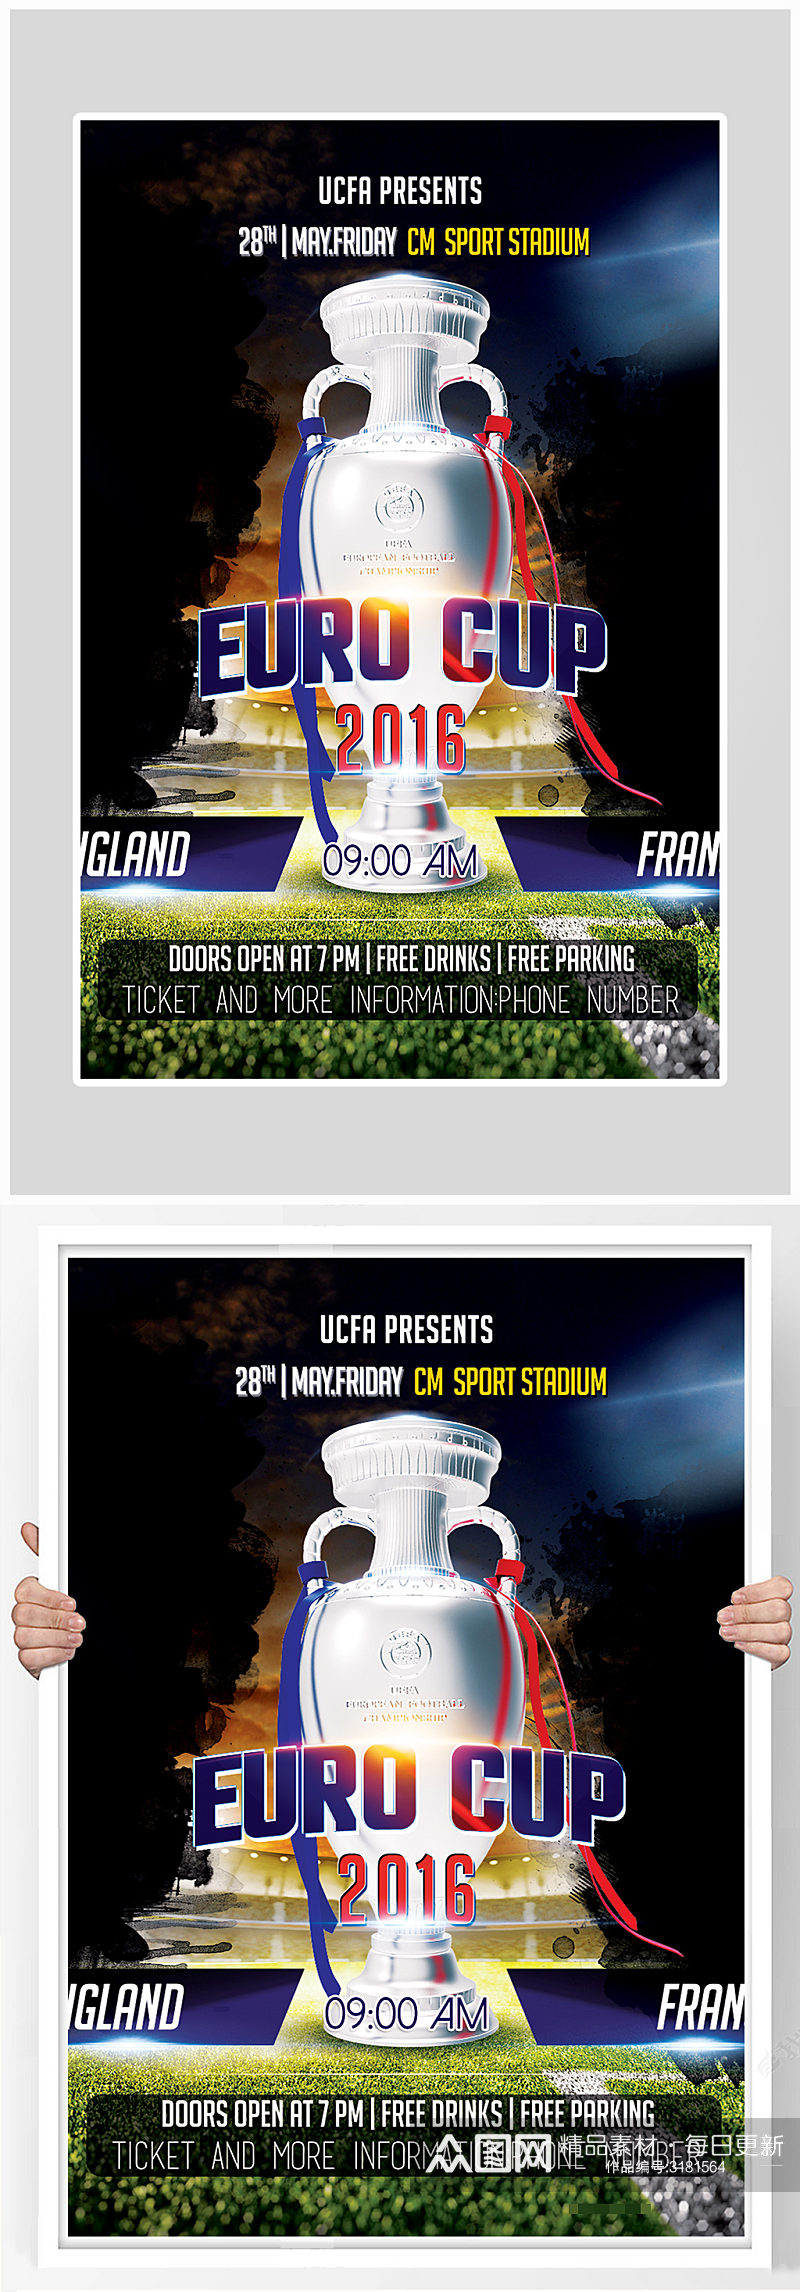 简约大气足球运动赛事海报设计素材